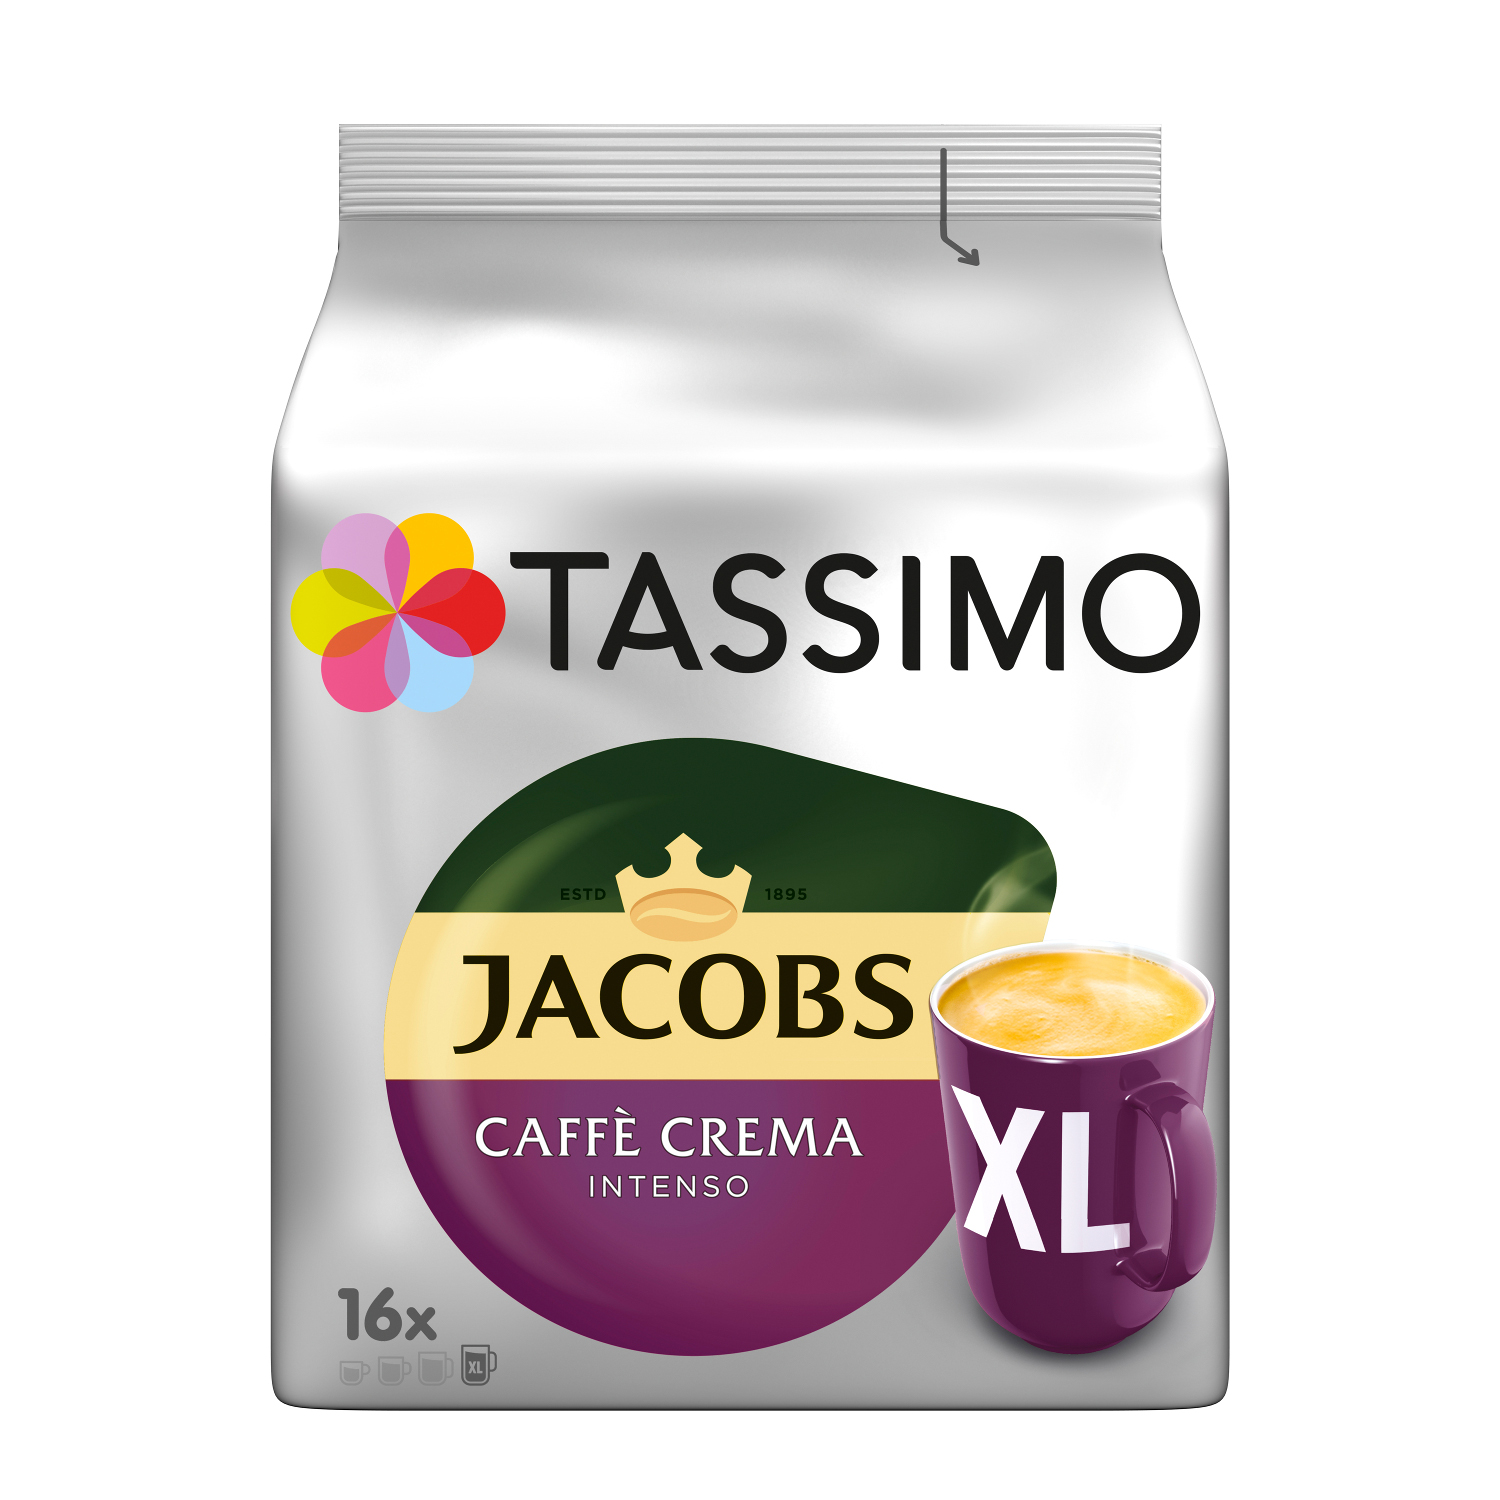 TASSIMO Vielfaltspaket Becherportionen Crema 5 System)) Sorten Kaffeekapseln Maschine (T-Disc (Tassimo Intenso Mild Café Morning XL Krönung